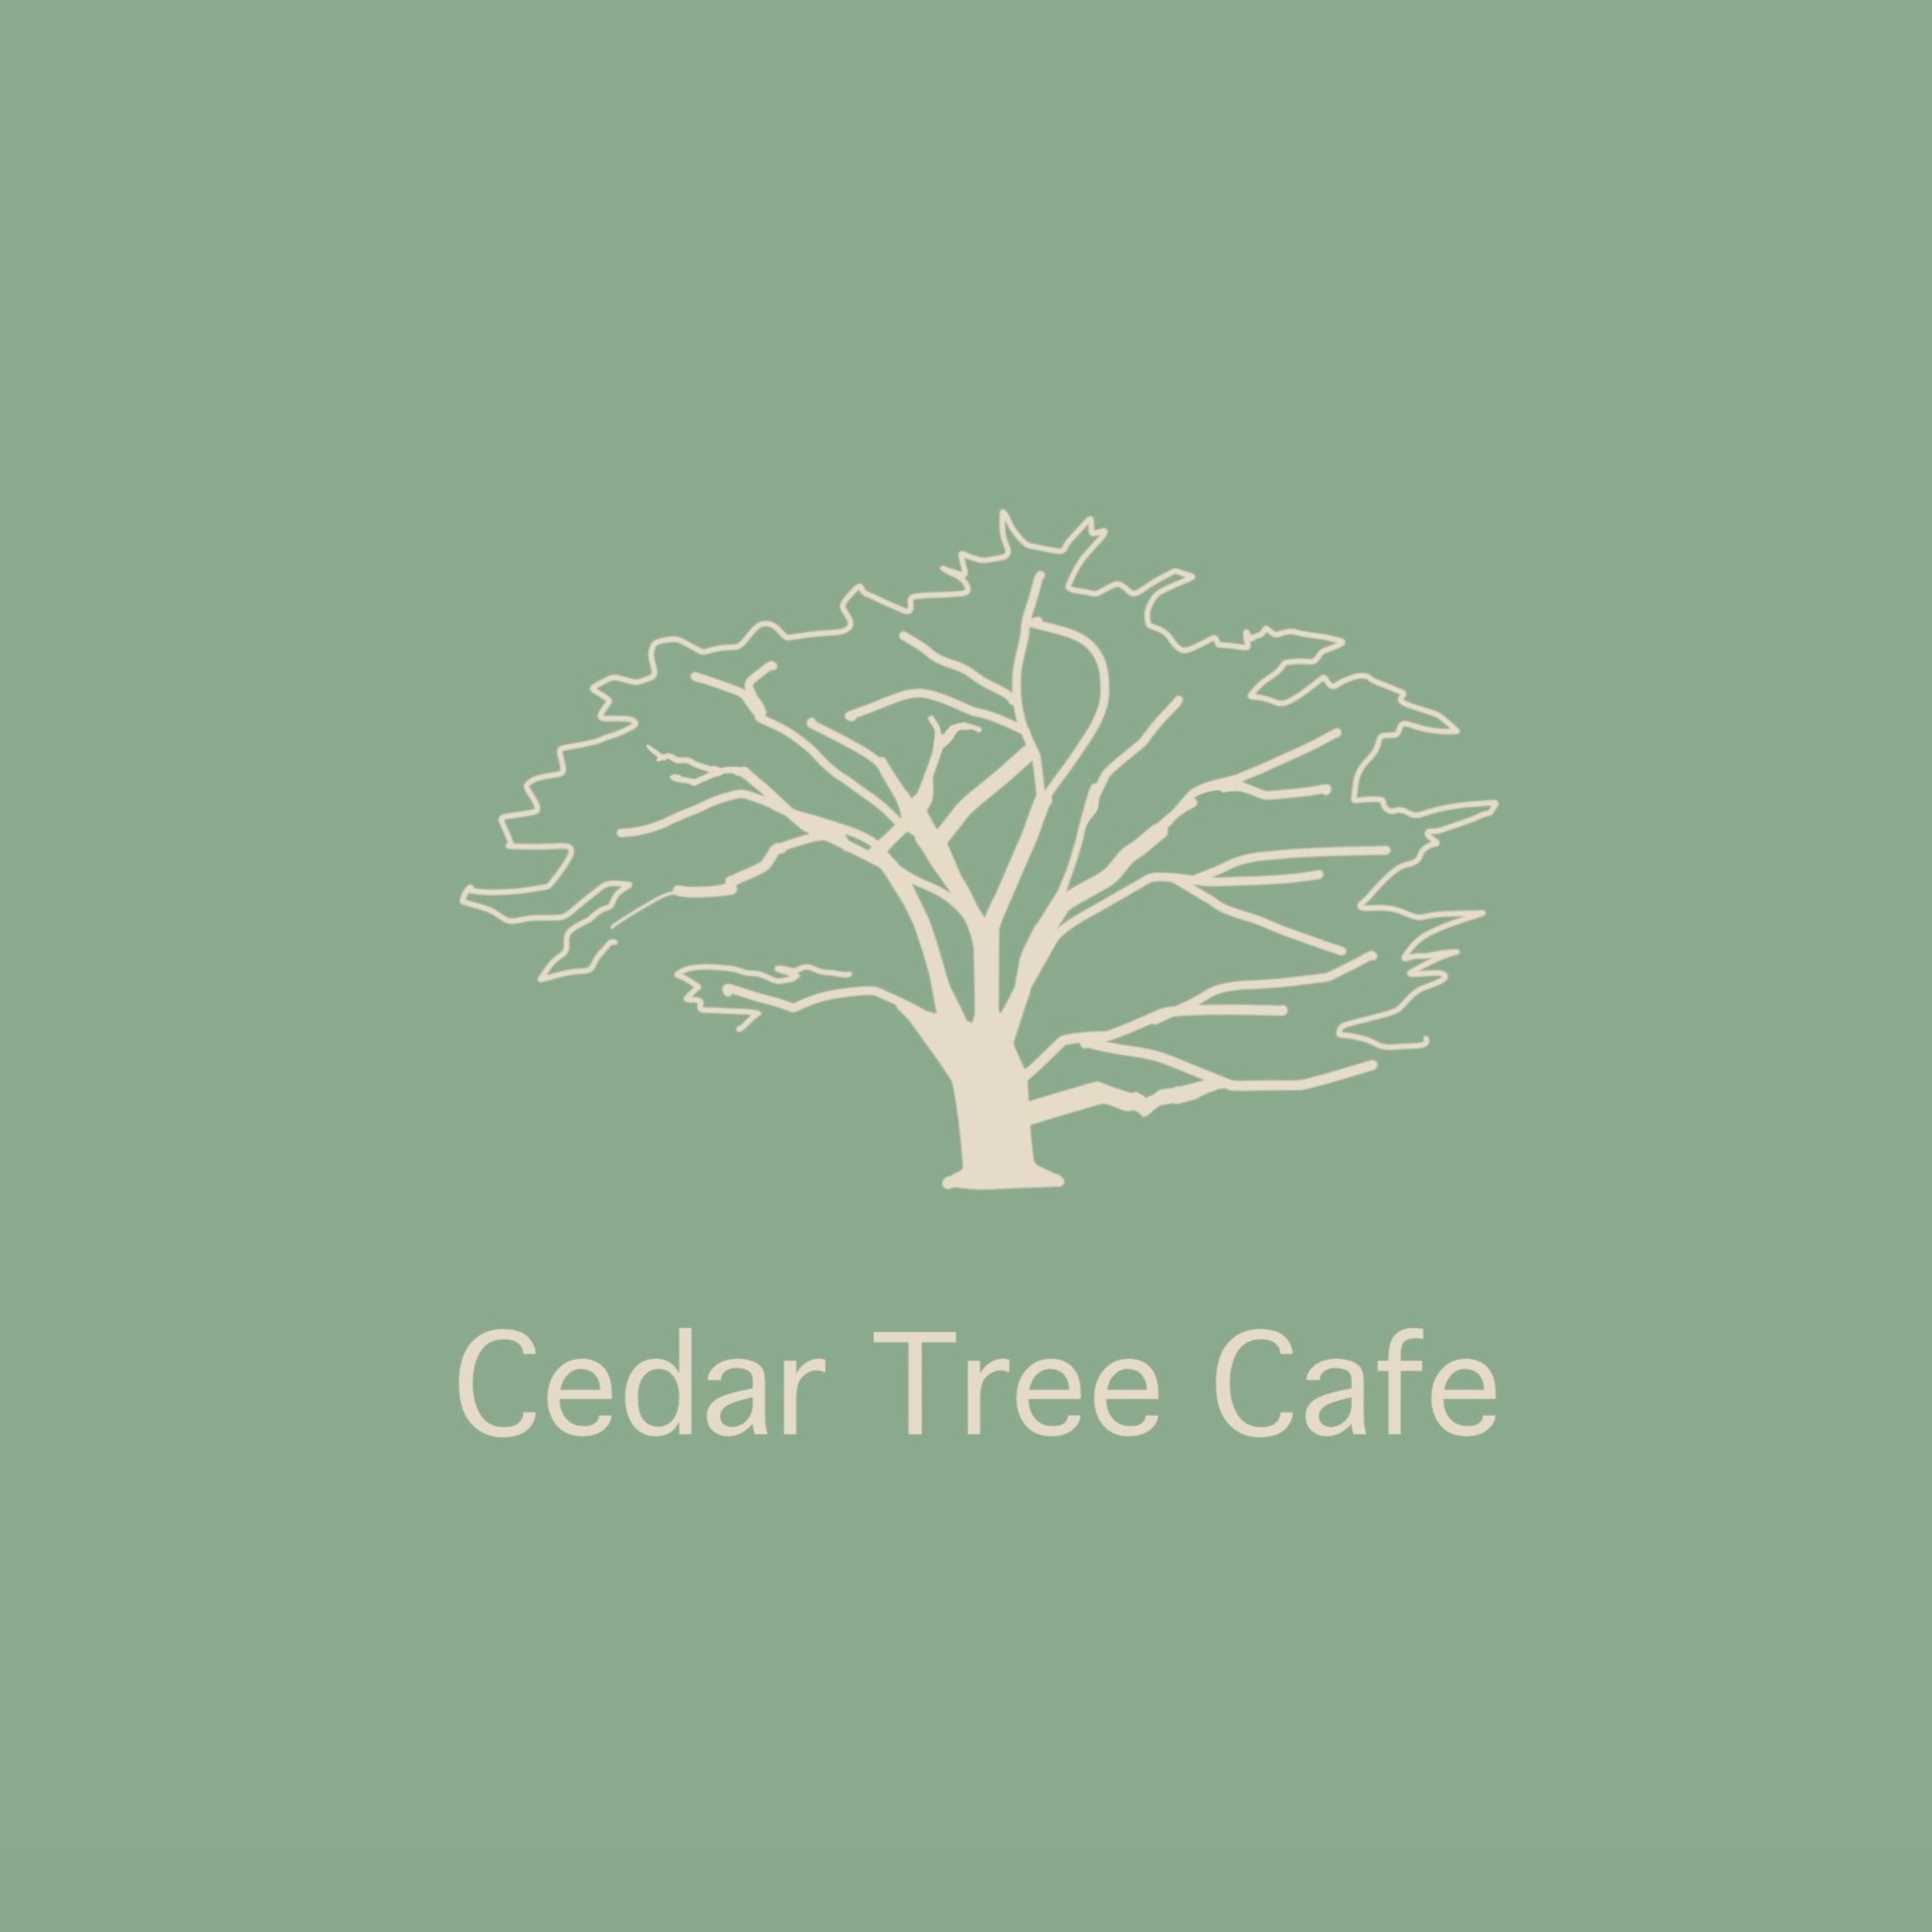 Cedar Tree Cafe logo cropped square